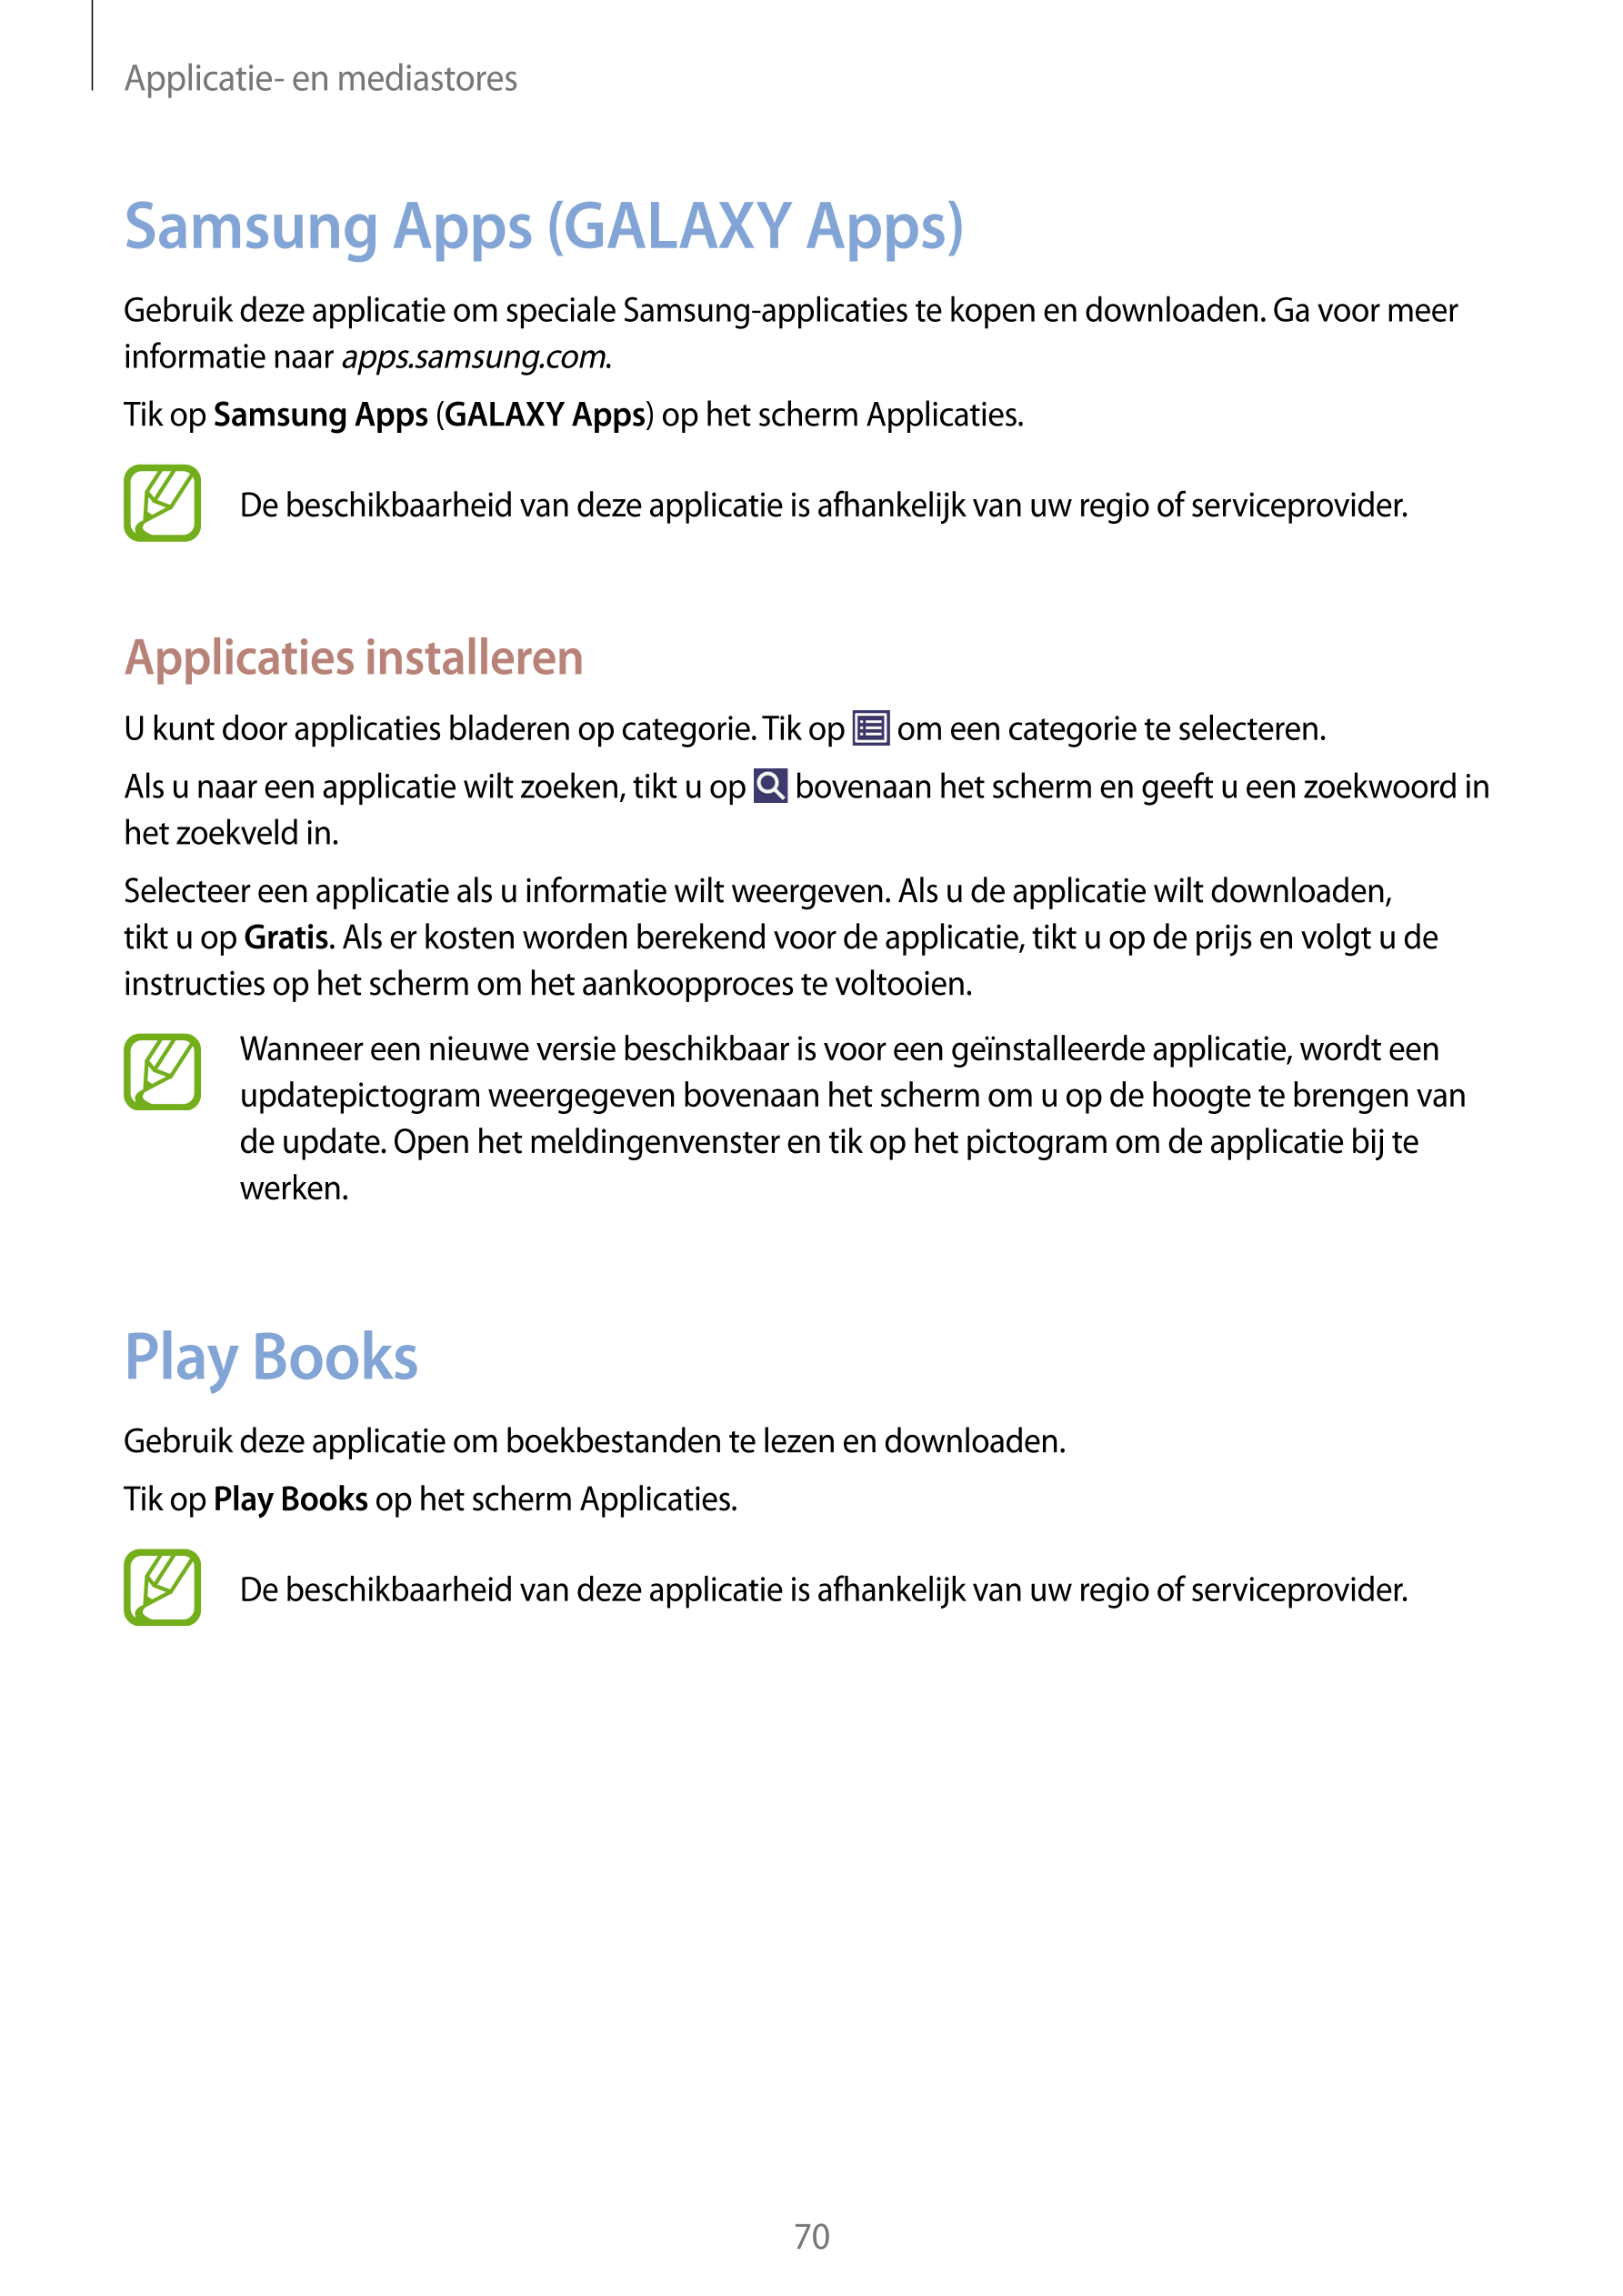 Applicatie- en mediastores
Samsung Apps (GALAXY Apps)
Gebruik deze applicatie om speciale Samsung-applicaties te kopen en downlo